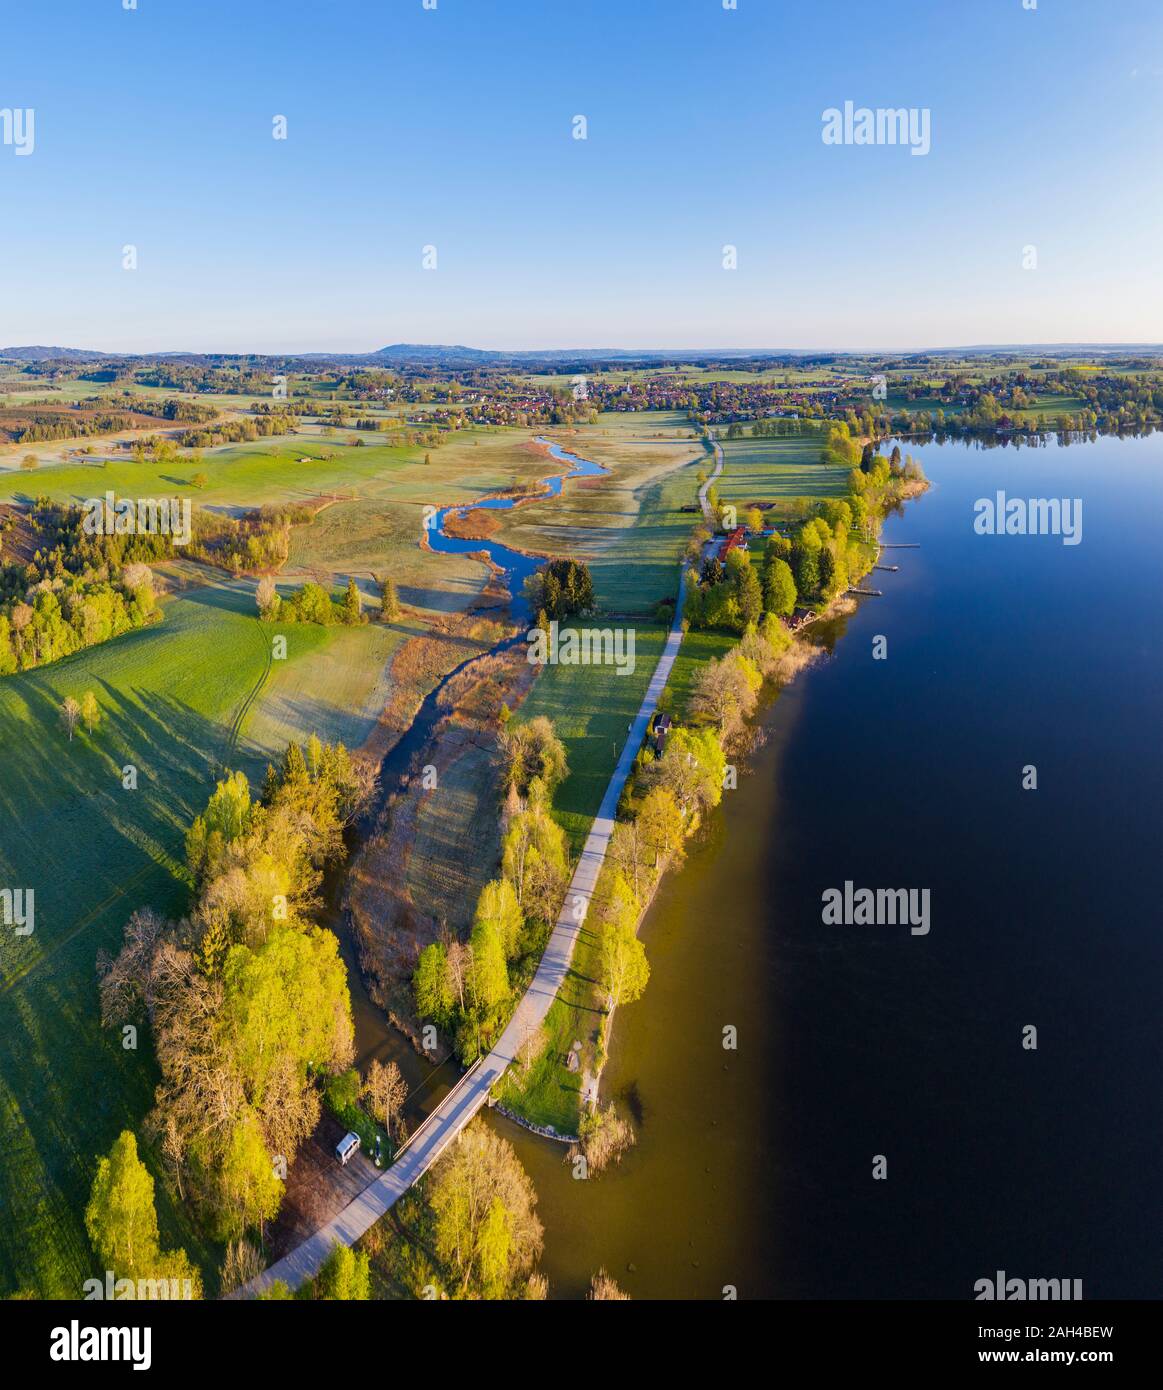 In Germania, in Baviera, Uffing am Staffelsee, vista aerea del paese di stiro su strada tra il fiume Ach e la riva del lago Staffelsee Foto Stock